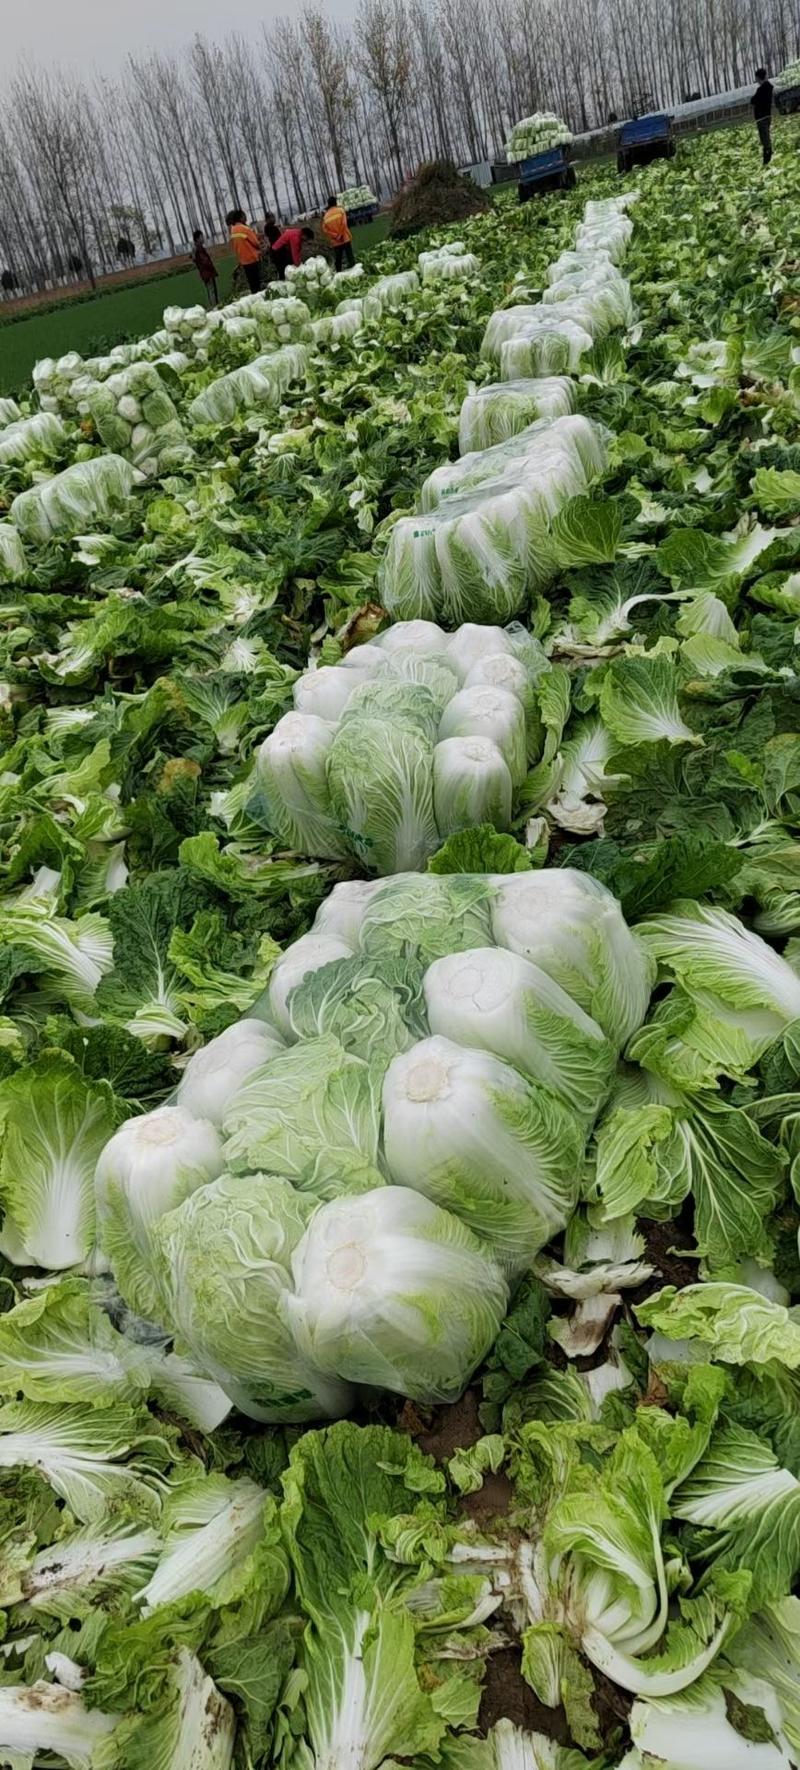 夏邑县青杂三号白菜供应泡菜厂、酸菜厂、市场、超市。